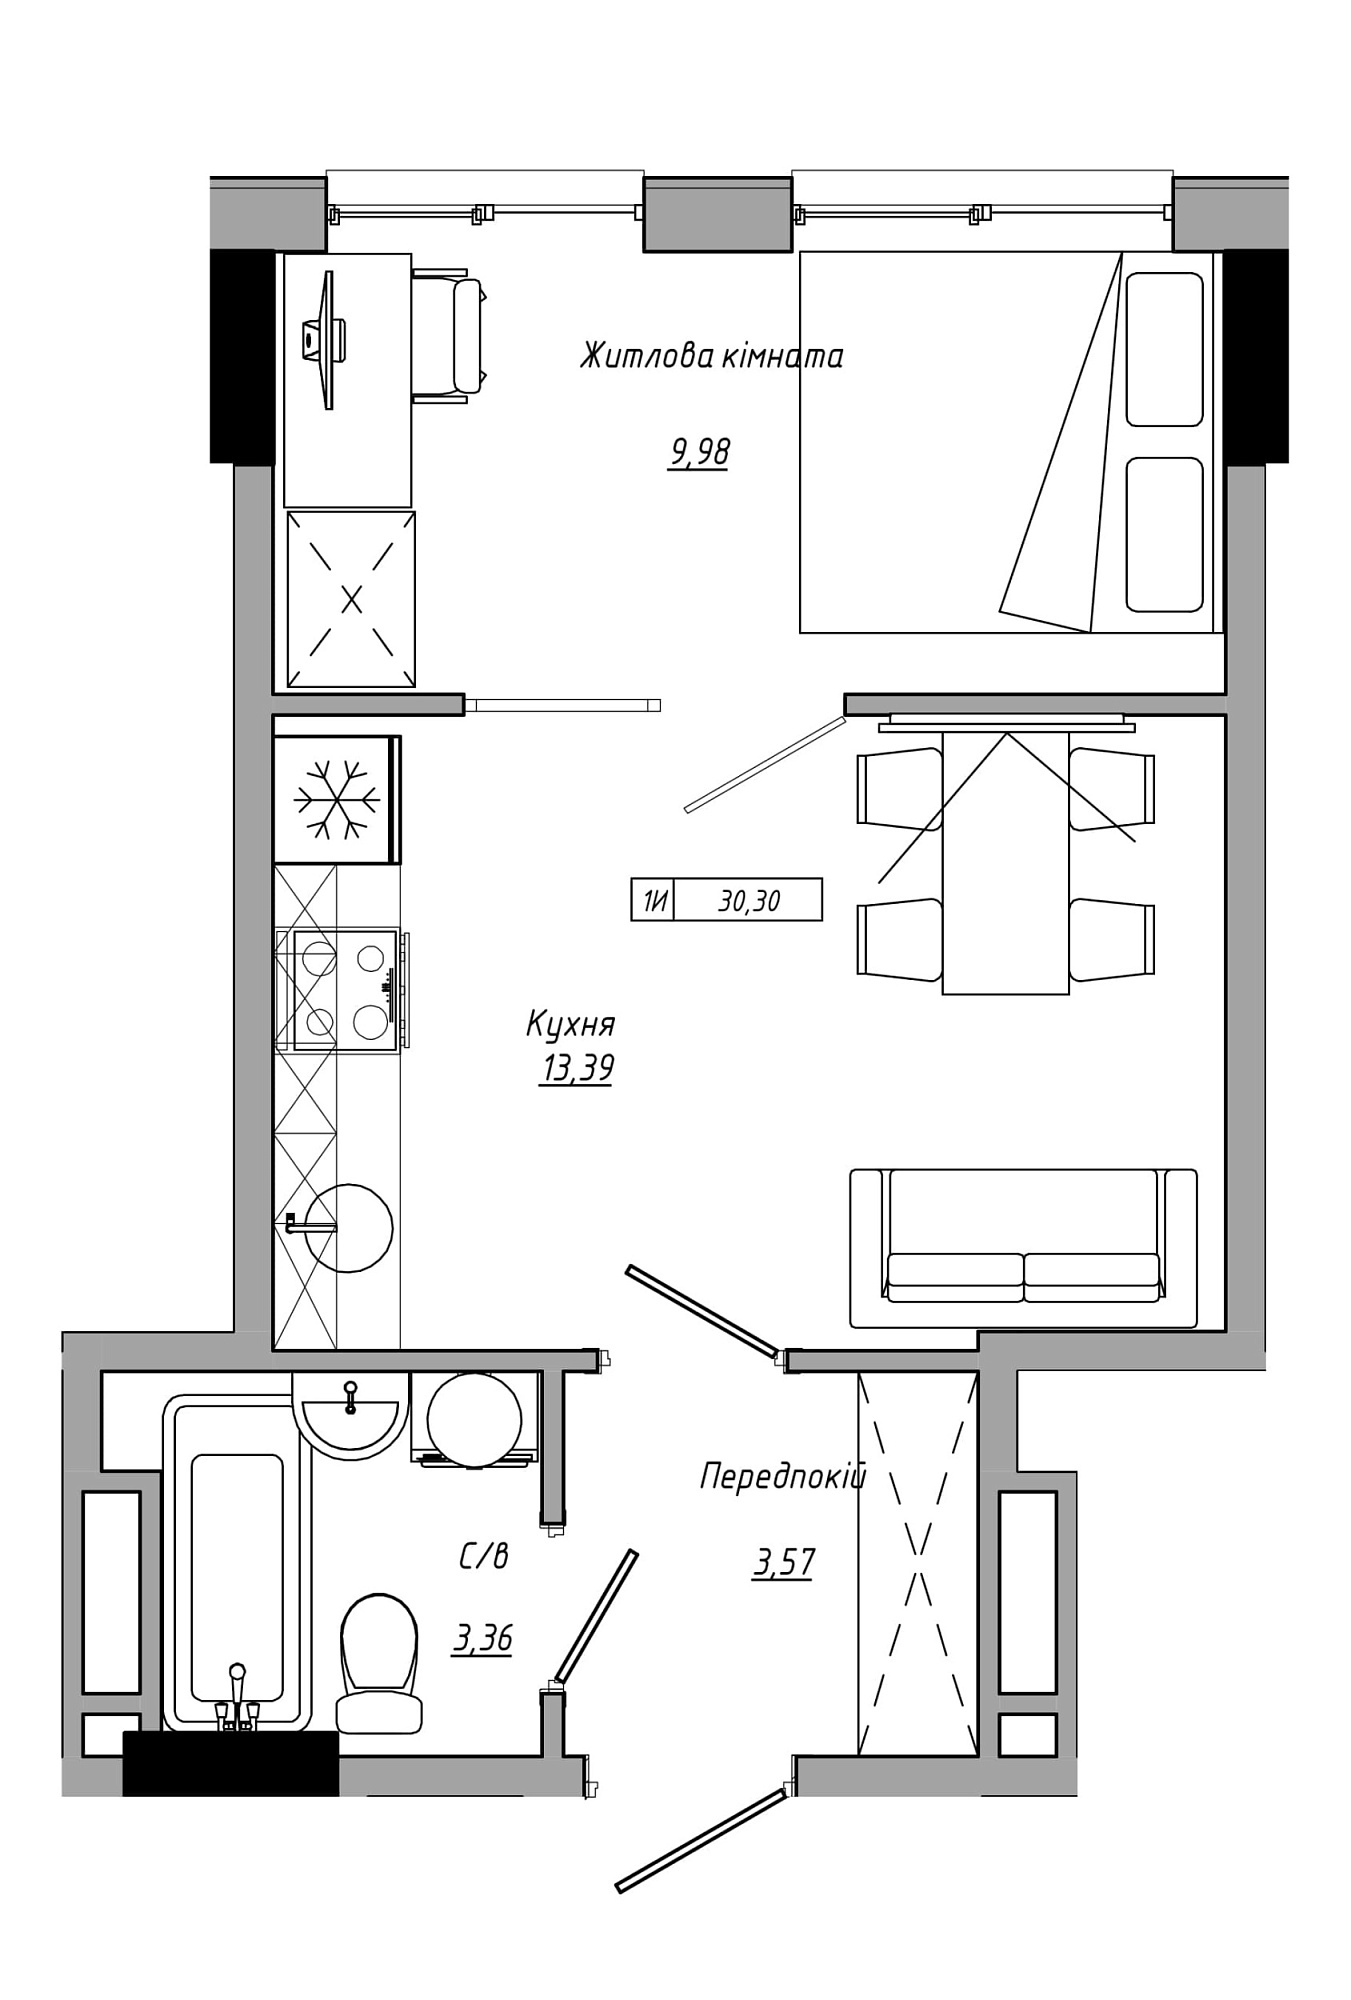 Планування 1-к квартира площею 30.3м2, AB-21-06/00012.